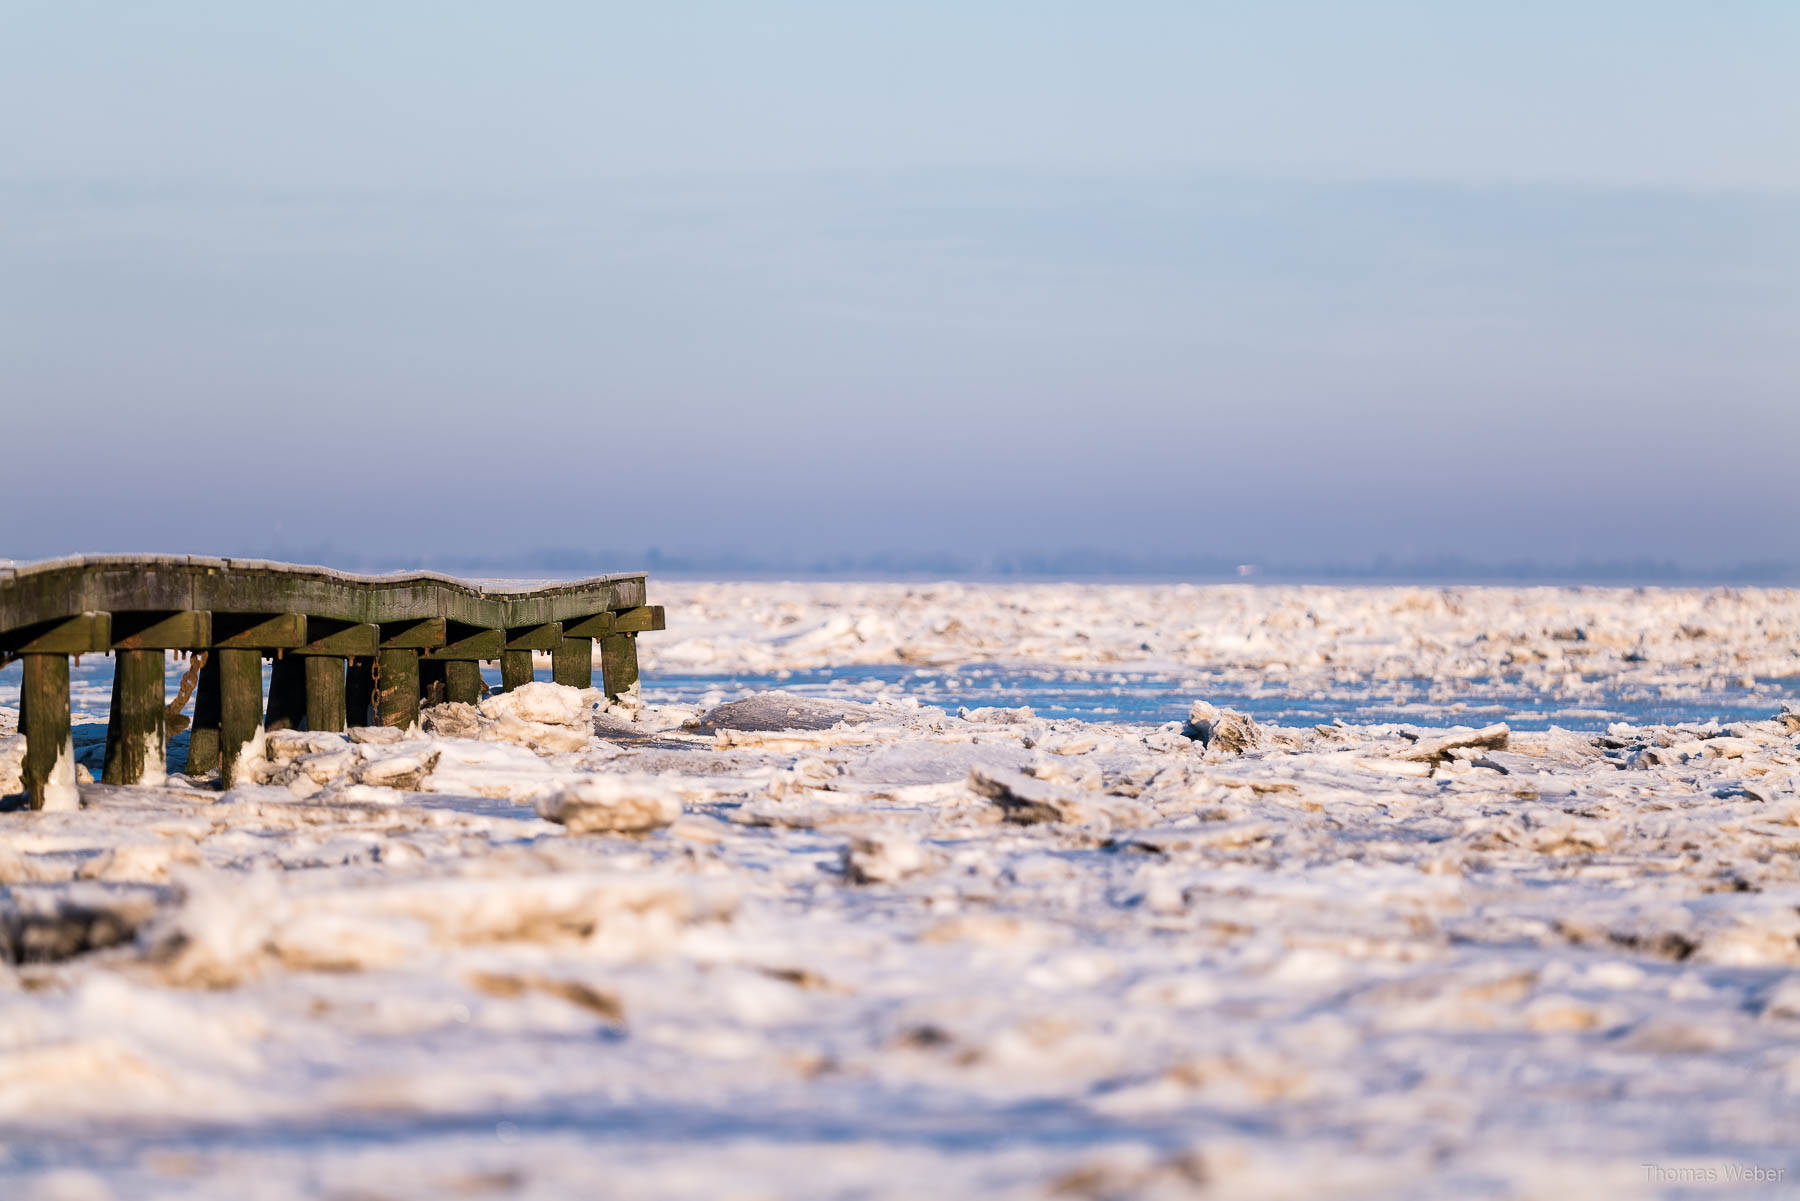 Steg von Dangast im Winter in Eis, Fotograf Thomas Weber aus Oldenburg